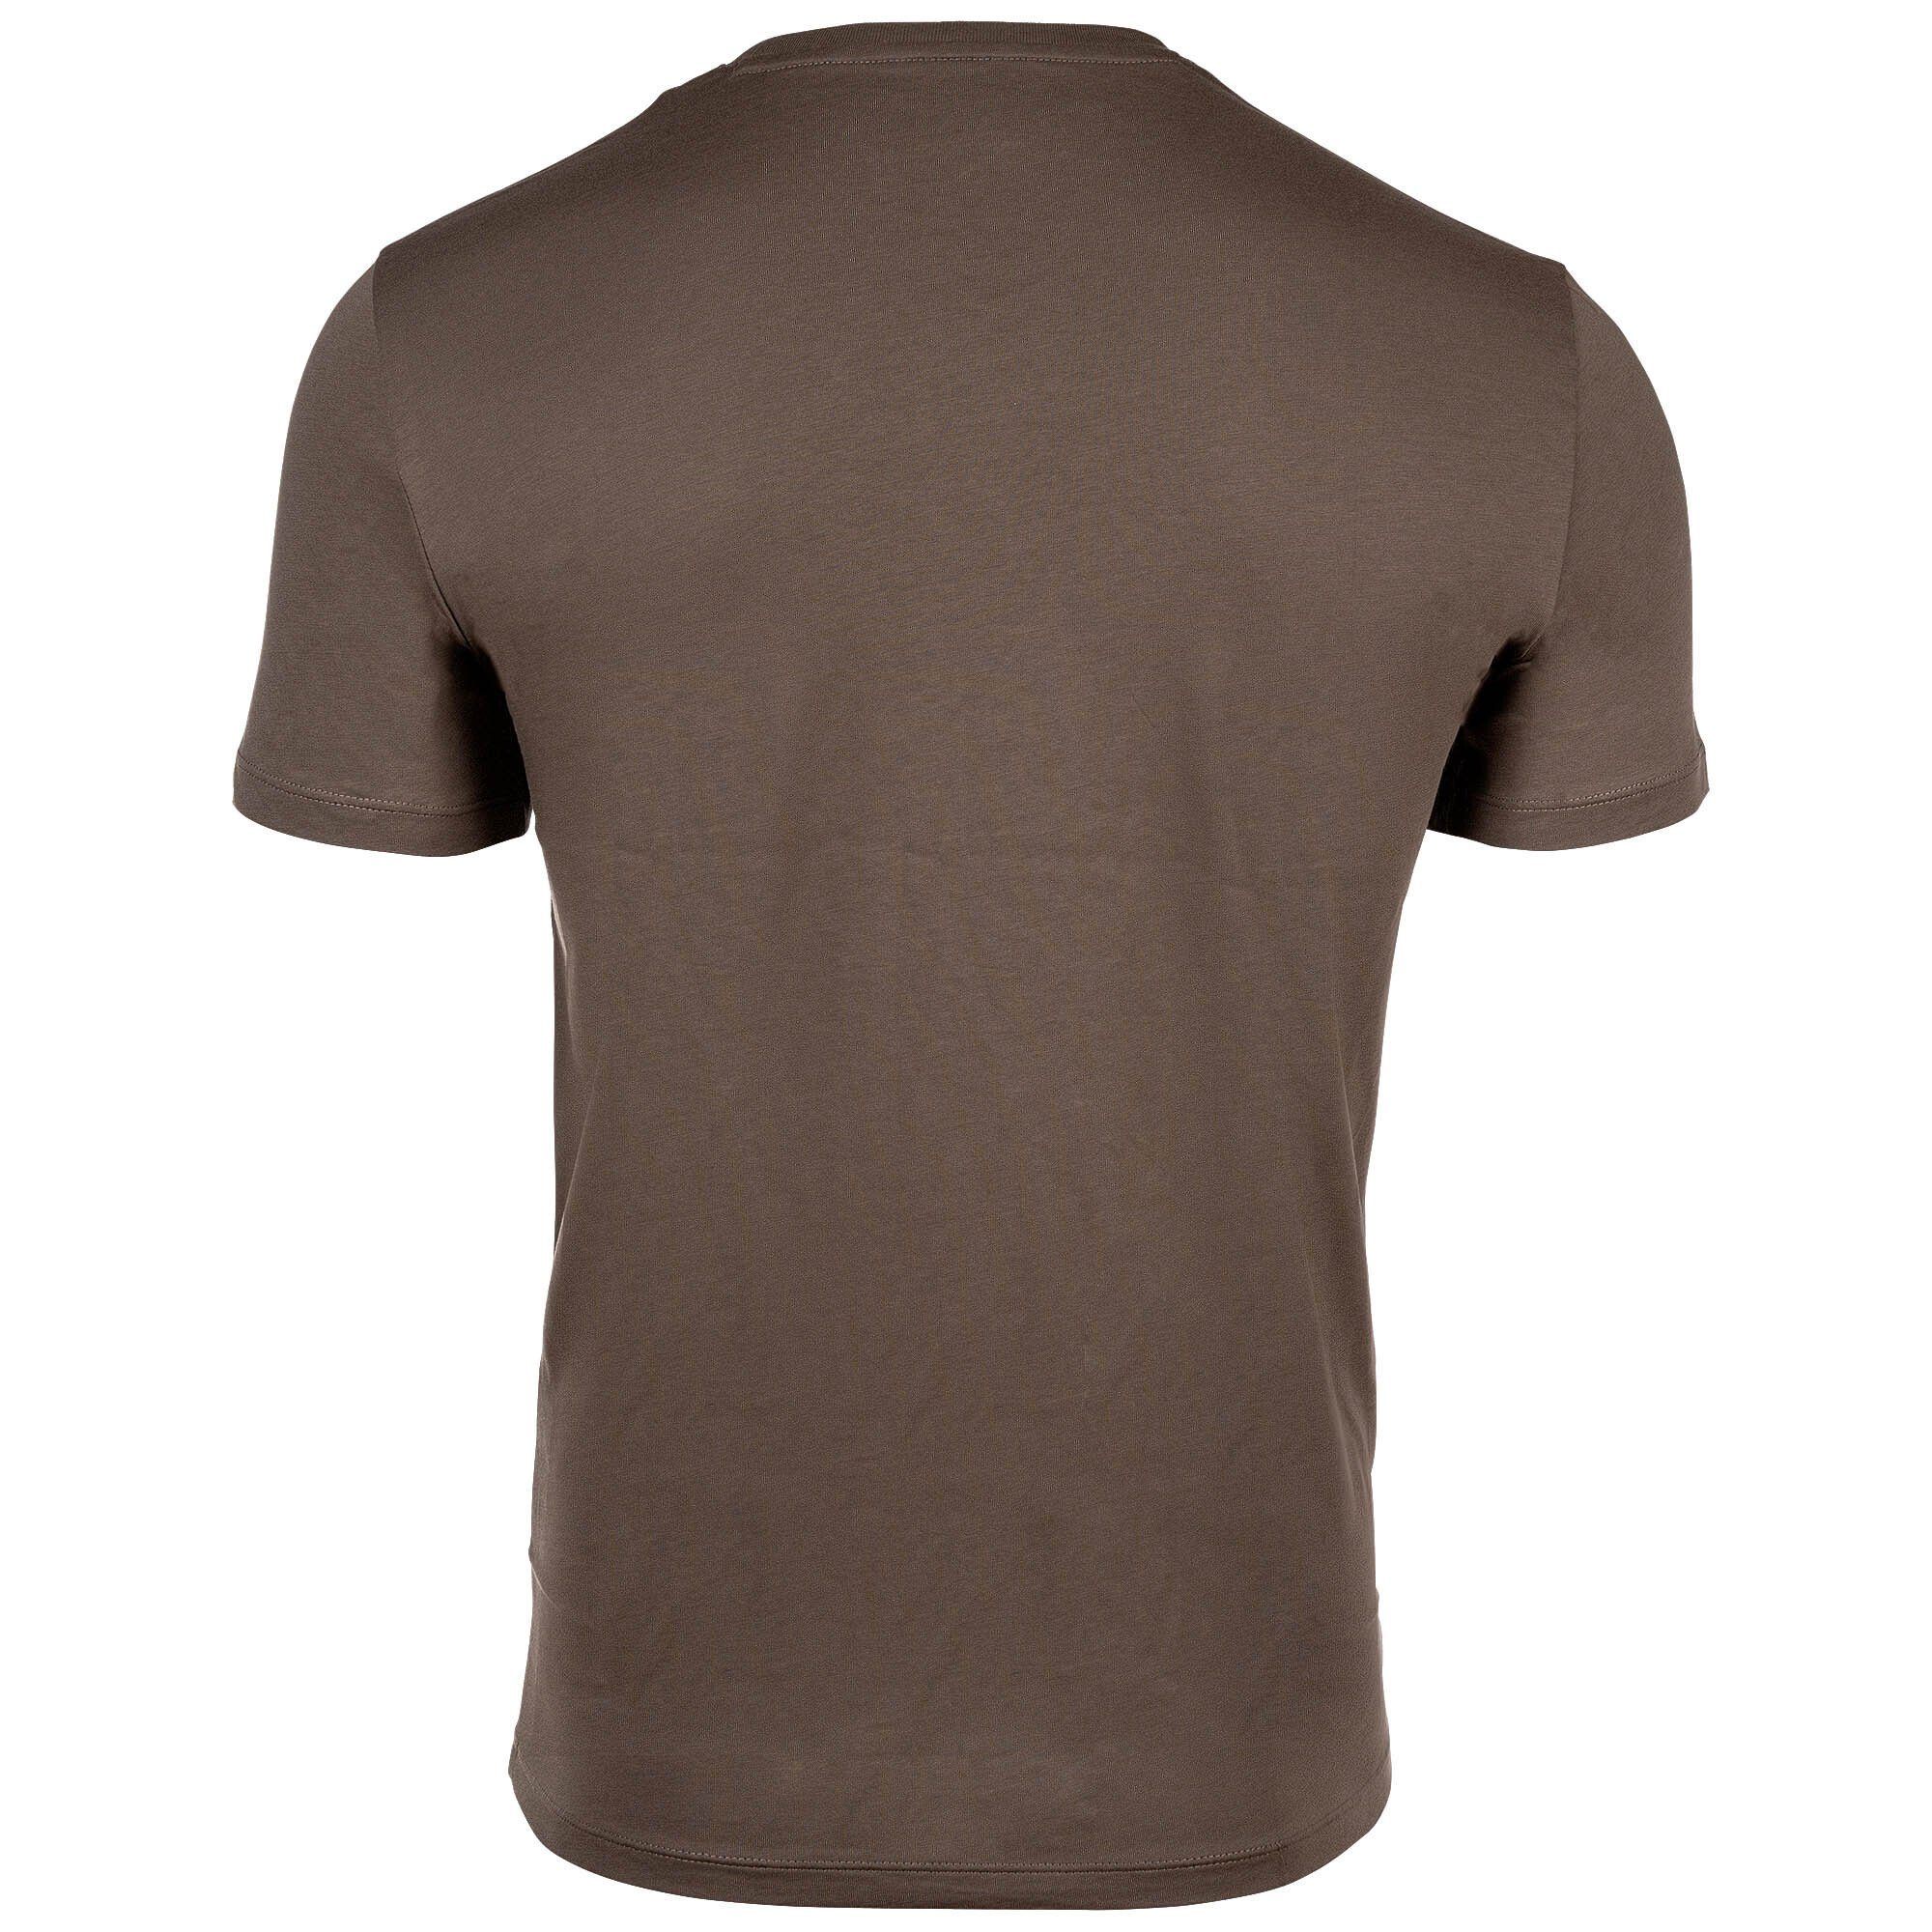 ARMANI EXCHANGE T-Shirt Herren Schriftzug, - T-Shirt Khaki Rundhals, Cotton